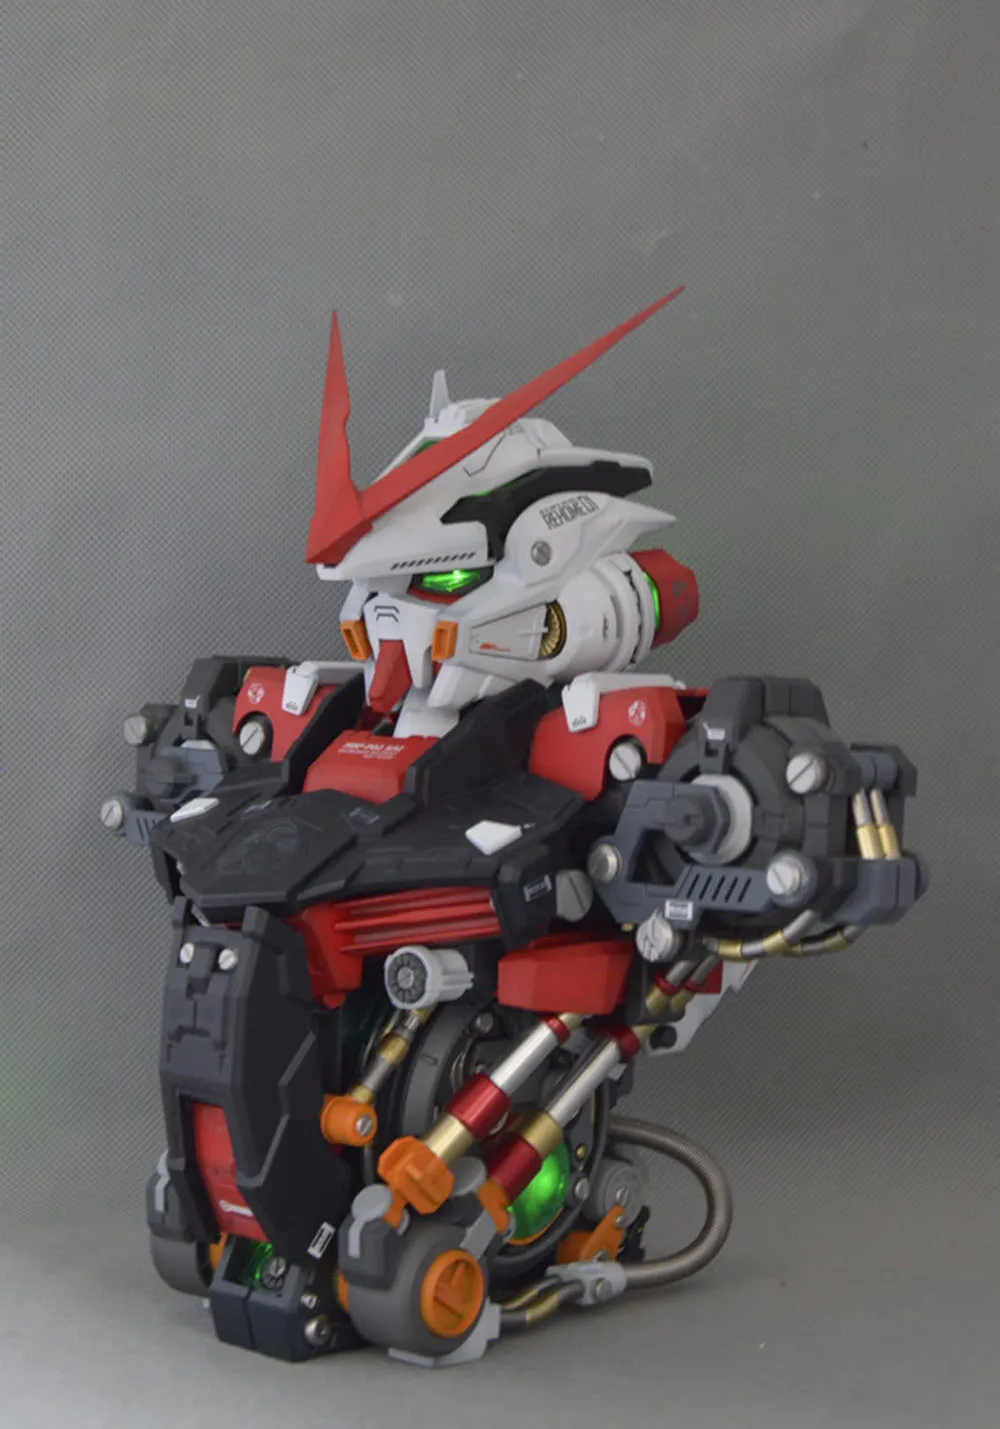 Комиксов клуб мотор королевская модель 1/35 семян Gundam Astray красная рамка бюст голова, бюст, статуя/в собранном виде модель Gundam робот gunpla